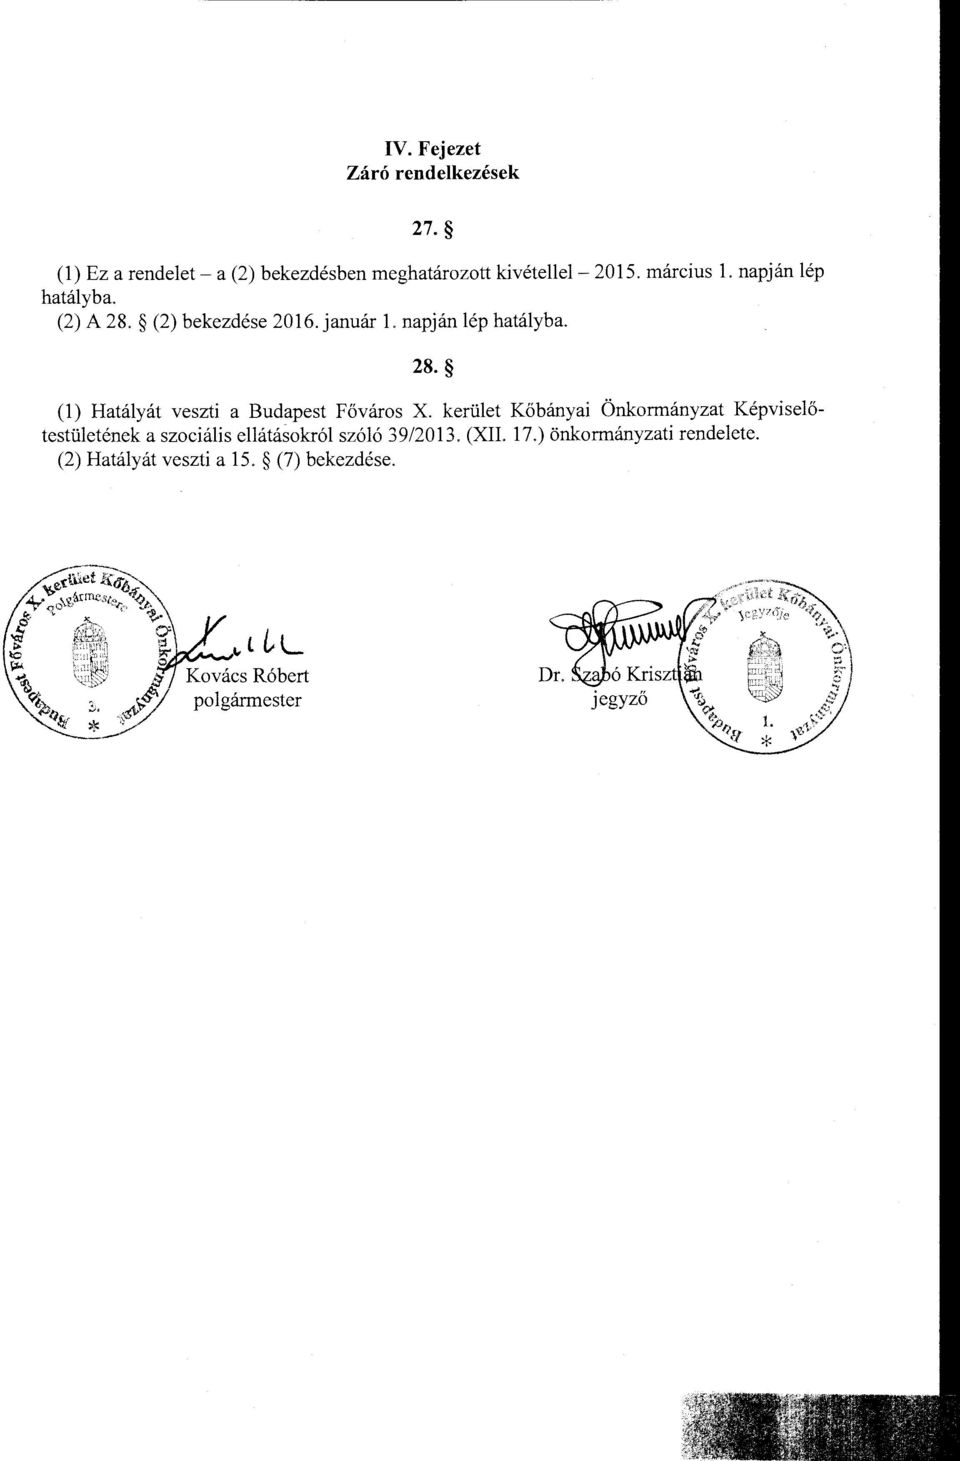 kerület Kőbányai Önkormányzat Képviselőtestületénekaszociális ellátásokról szóló 39/2013. (XII. 17.